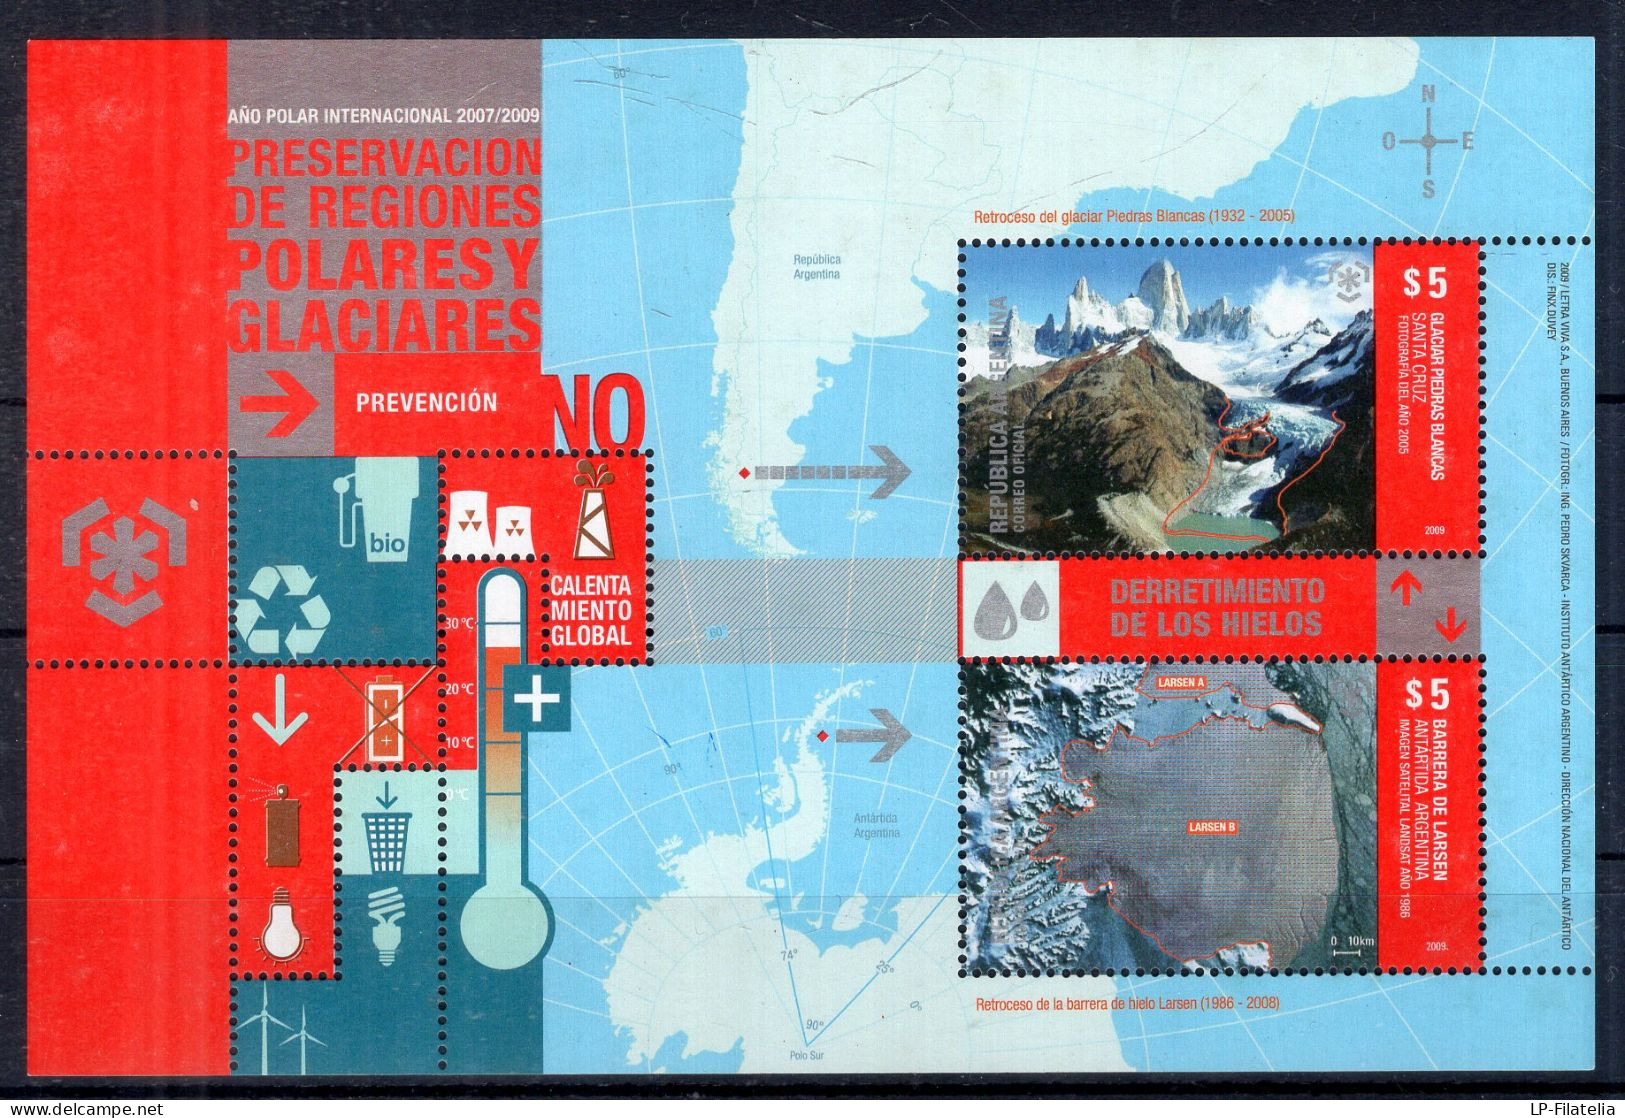 Argentina - 2009 - Souvenir Sheet - Preservación De Regiones Polares Y Glaciares. - Unused Stamps